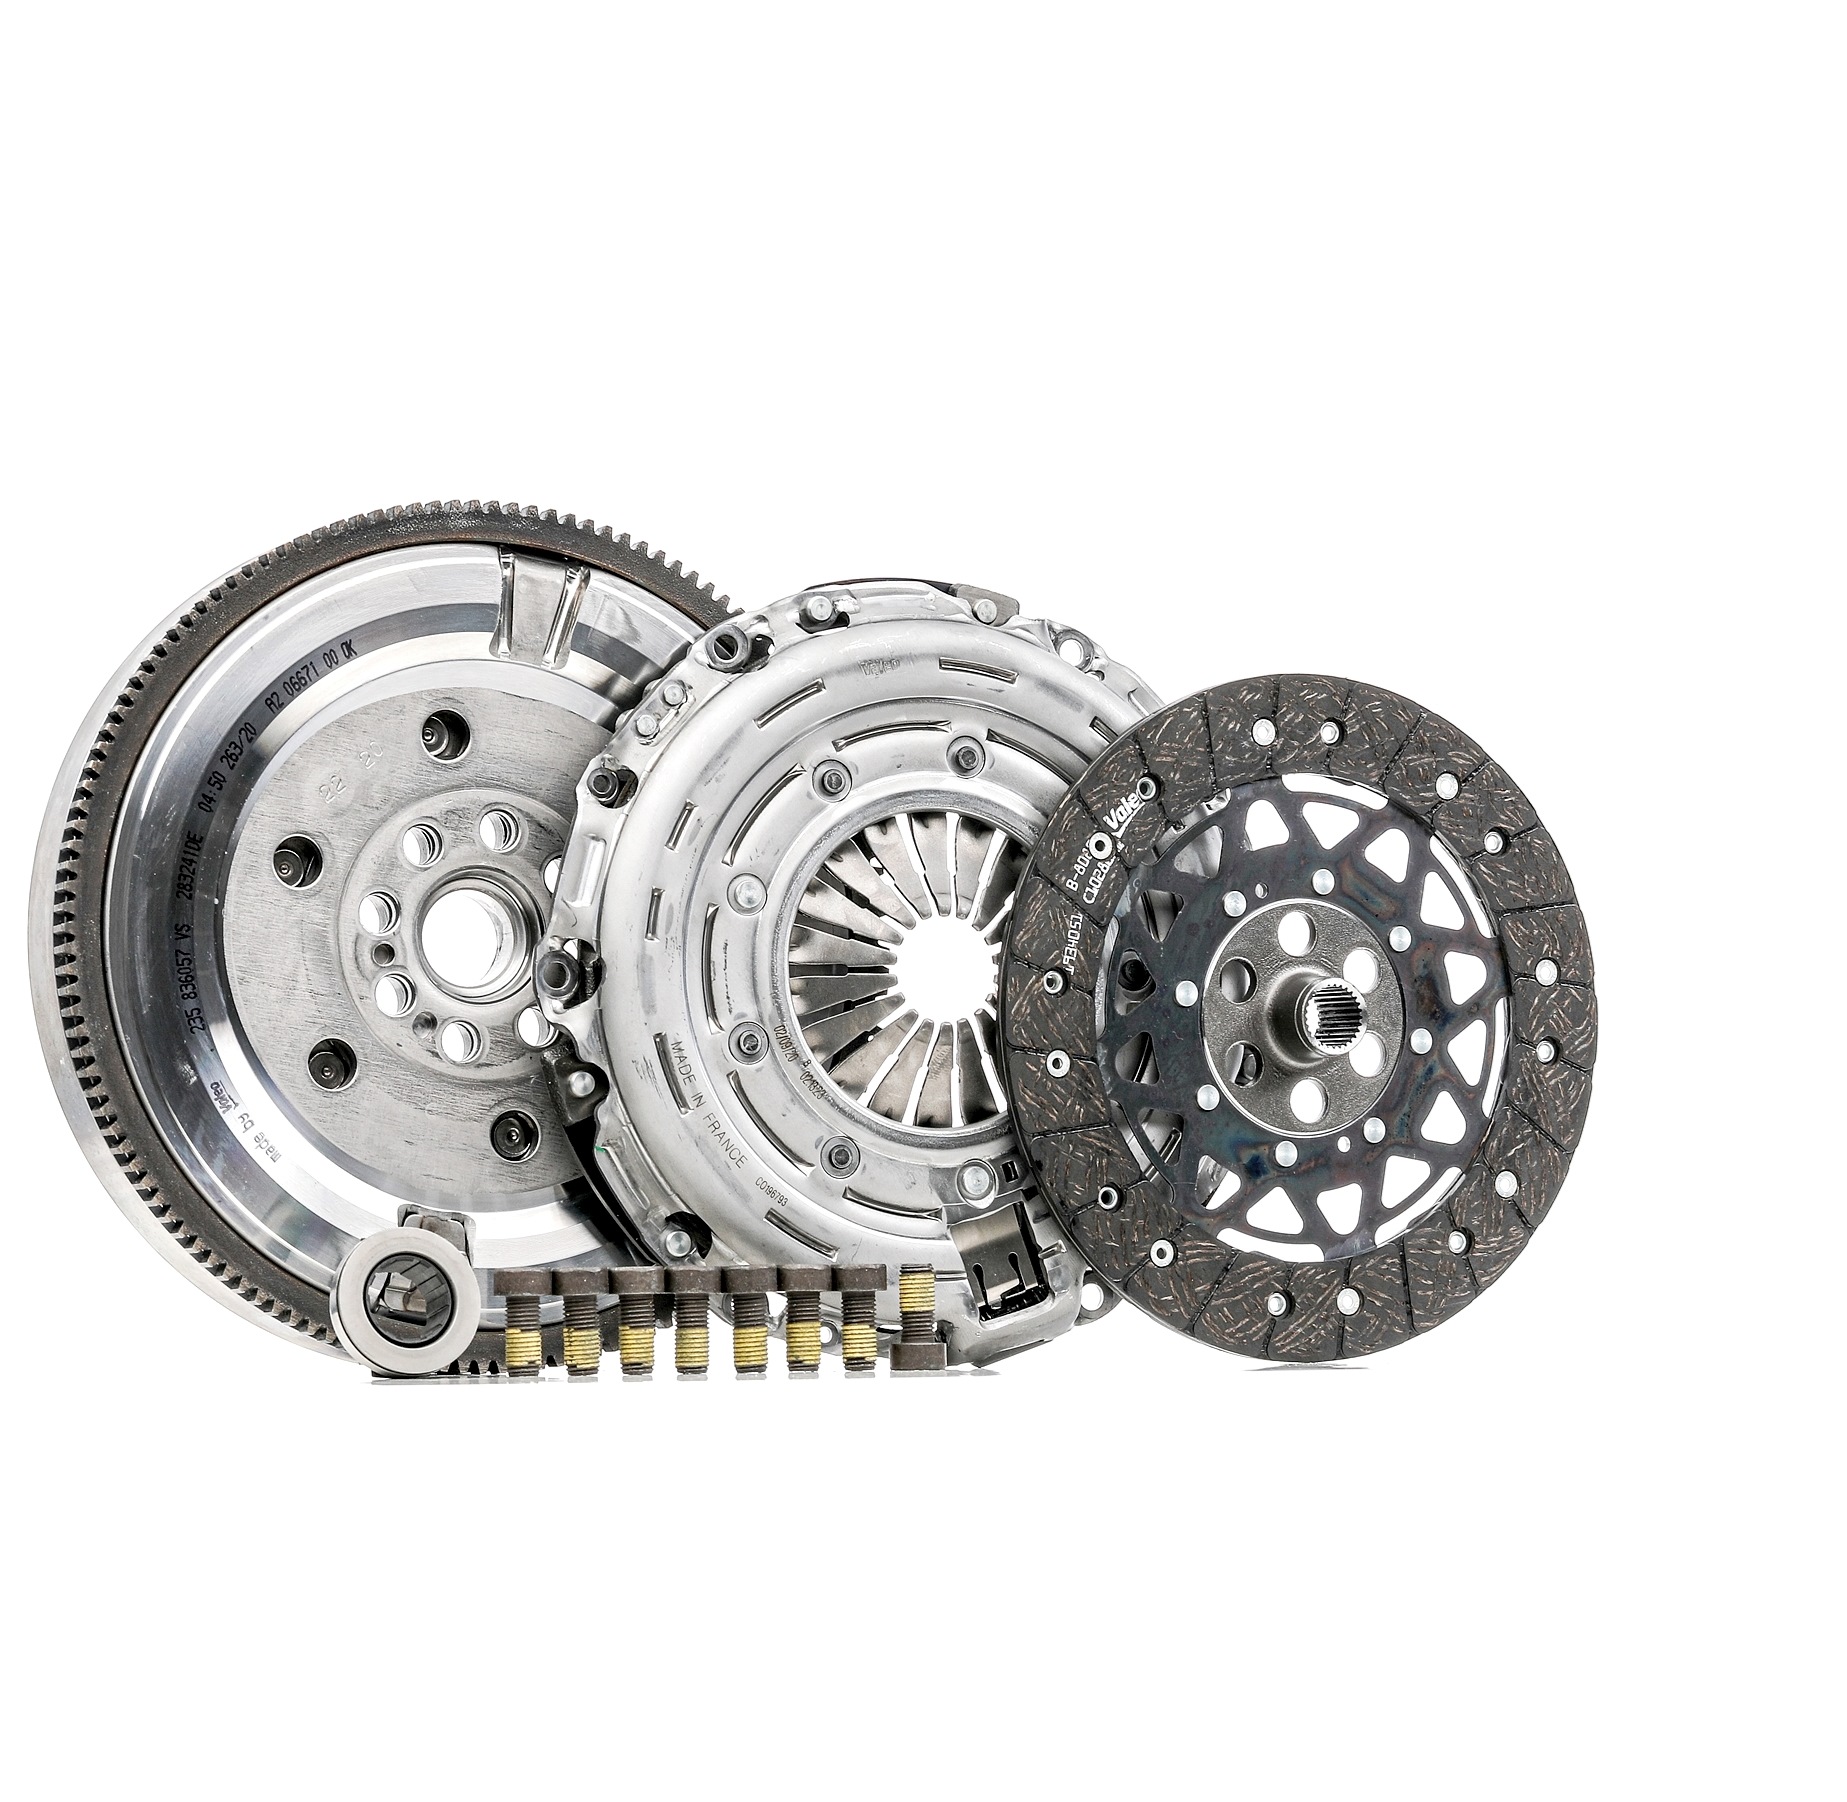 Buy Clutch kit VALEO 837072 - MINI Clutch parts online